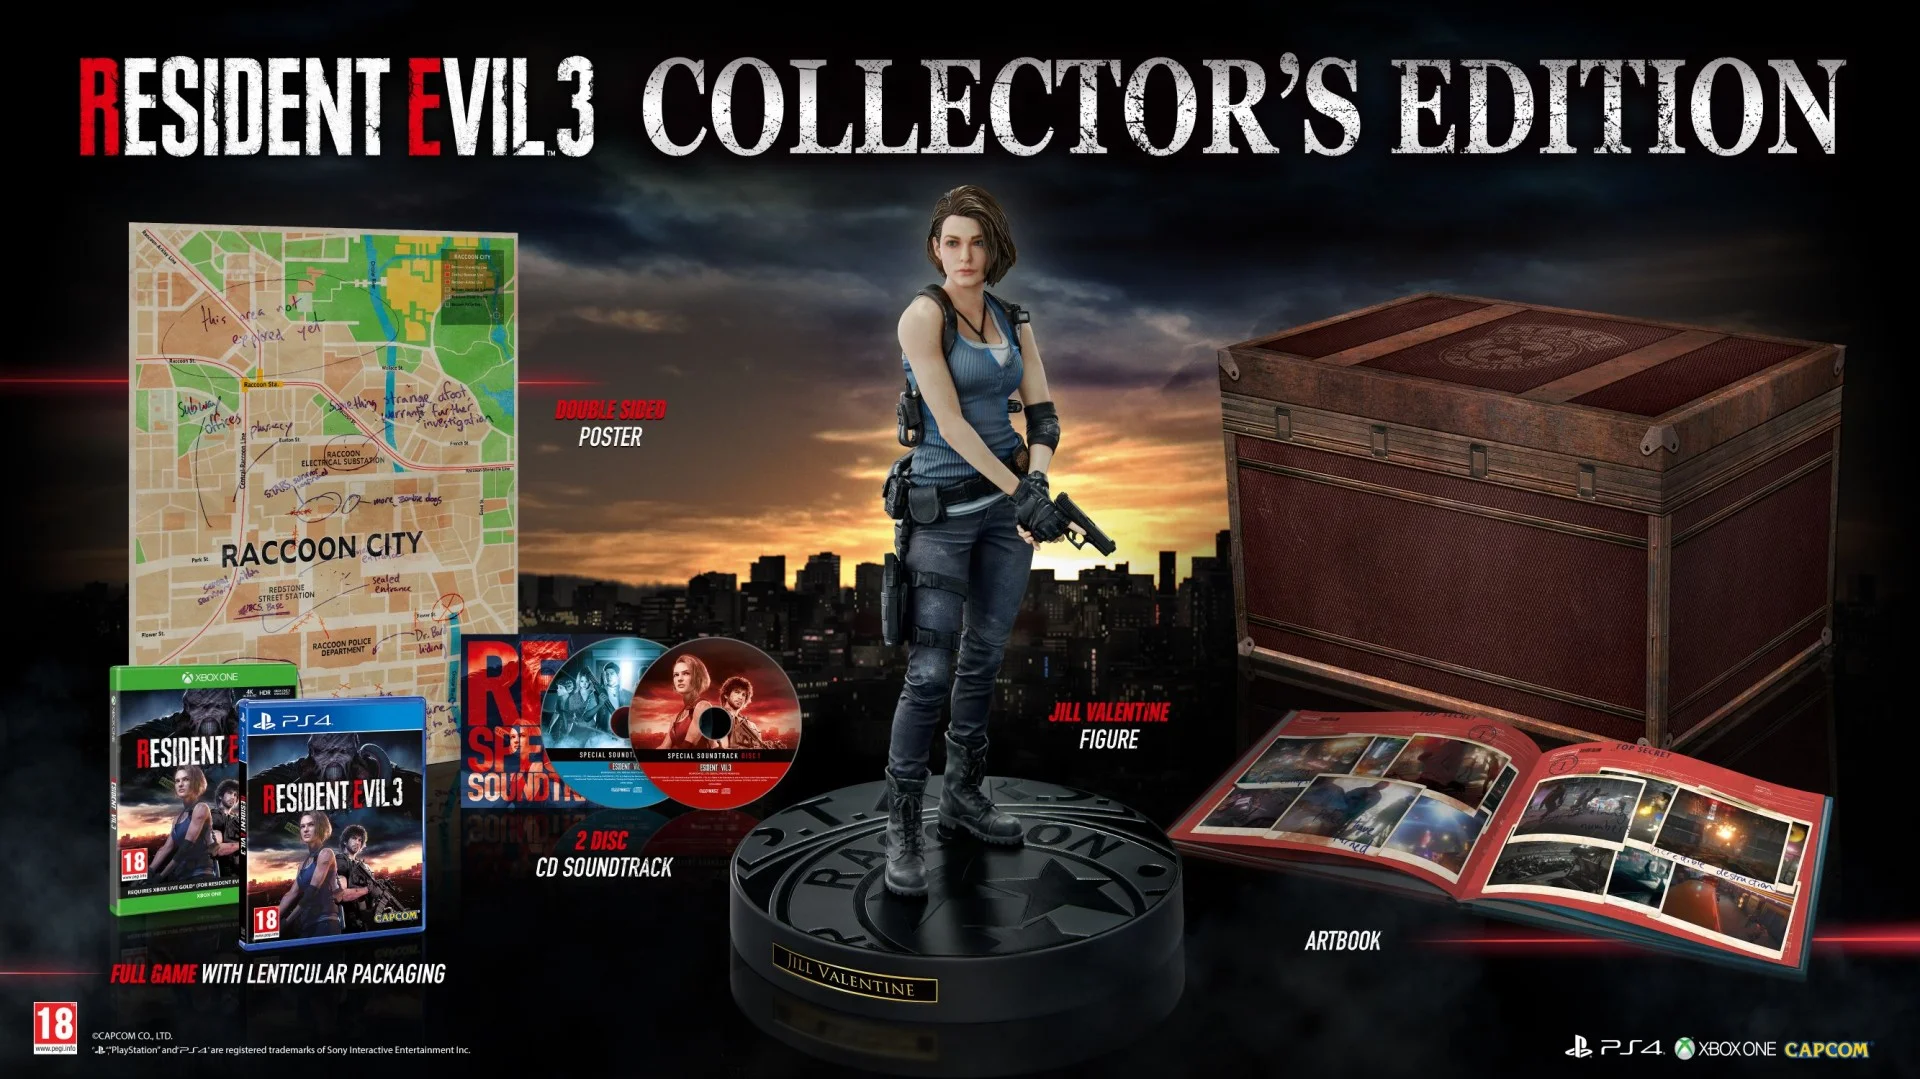 В коллекционку ремейка Resident Evil 3 для Европы не войдёт фигурка Немезиса - фото 1